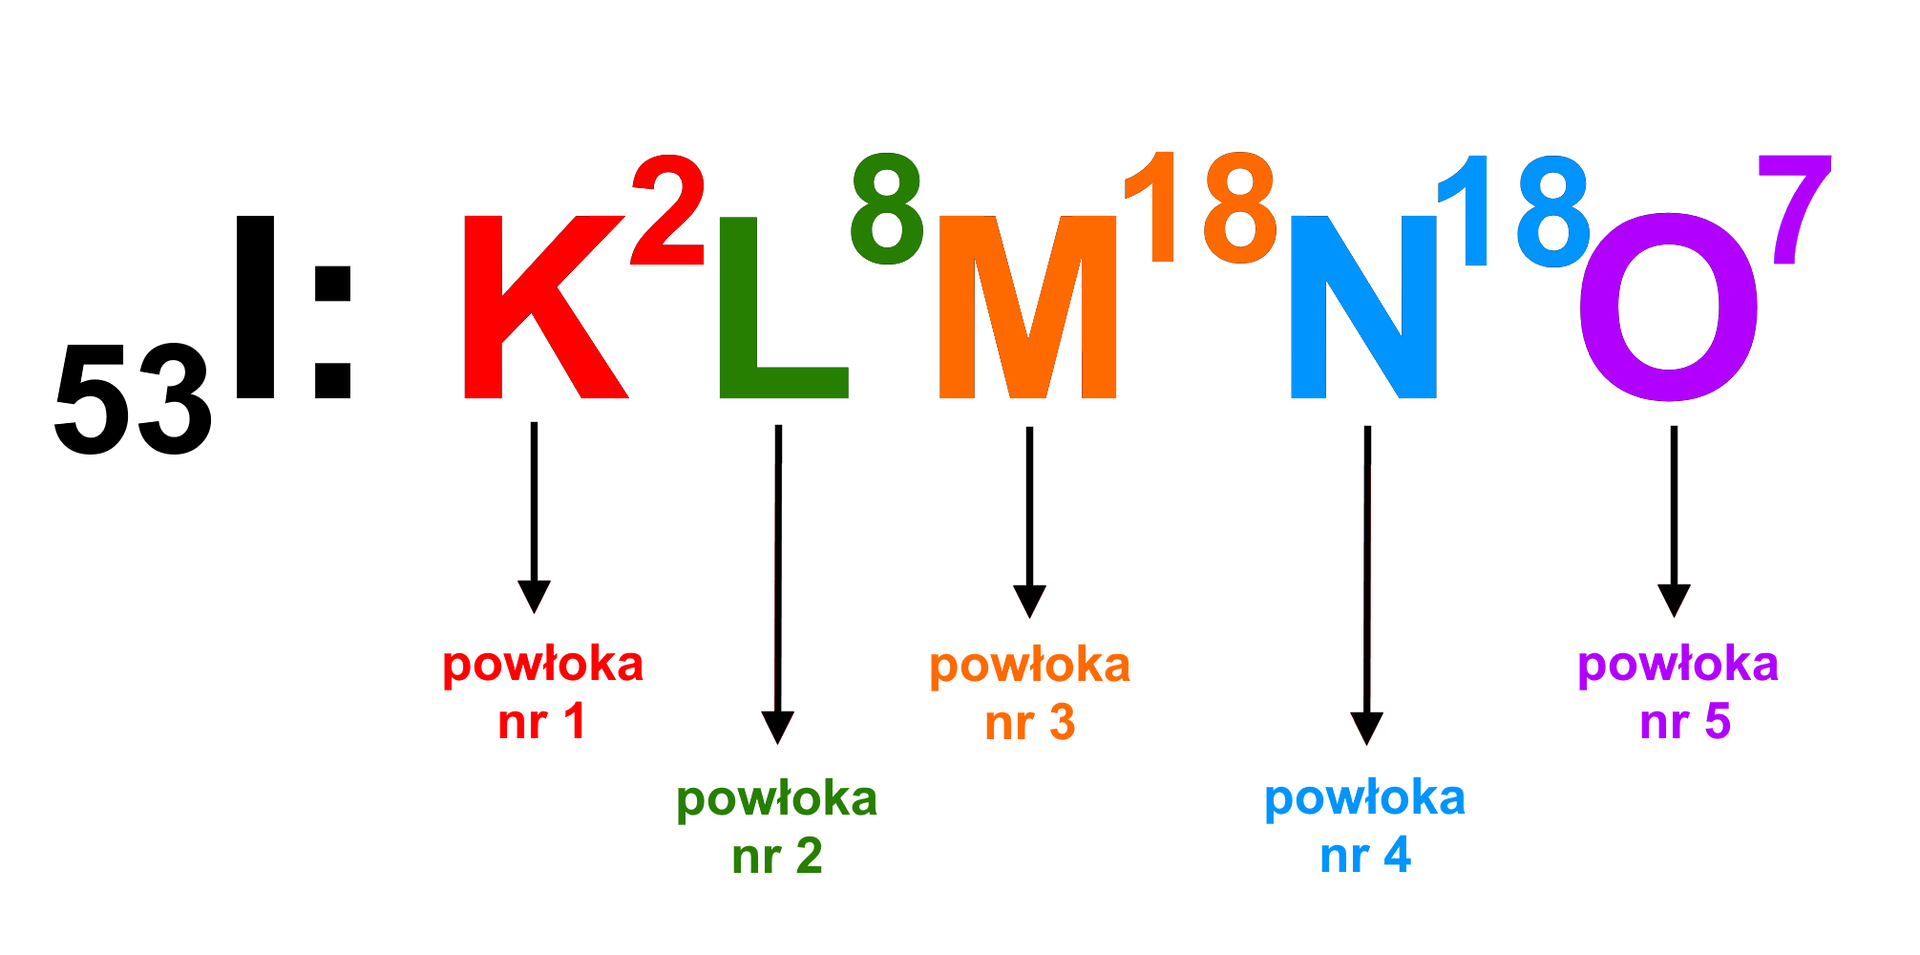 Grafika przedstawia konfigurację elektronową jodu -  indeks dolny, pięćdziesiąt trzy, koniec indeksu dolnego, I: K z indeksem górnym 2, L z indeksem górnym 8, M z indeksem górnym 18, N indeksem górnym 18, O  indeksem górnym 7. Od każdej litery w konfiguracji oznaczającej powłokę odchodzi strzałka prowadząca do podpisu z numerem powłoki. K - powłoka nr 1, L - powłoka nr 2, M - powłoka nr 3, N - powłoka nr 4 i O - powłoka nr 5. 